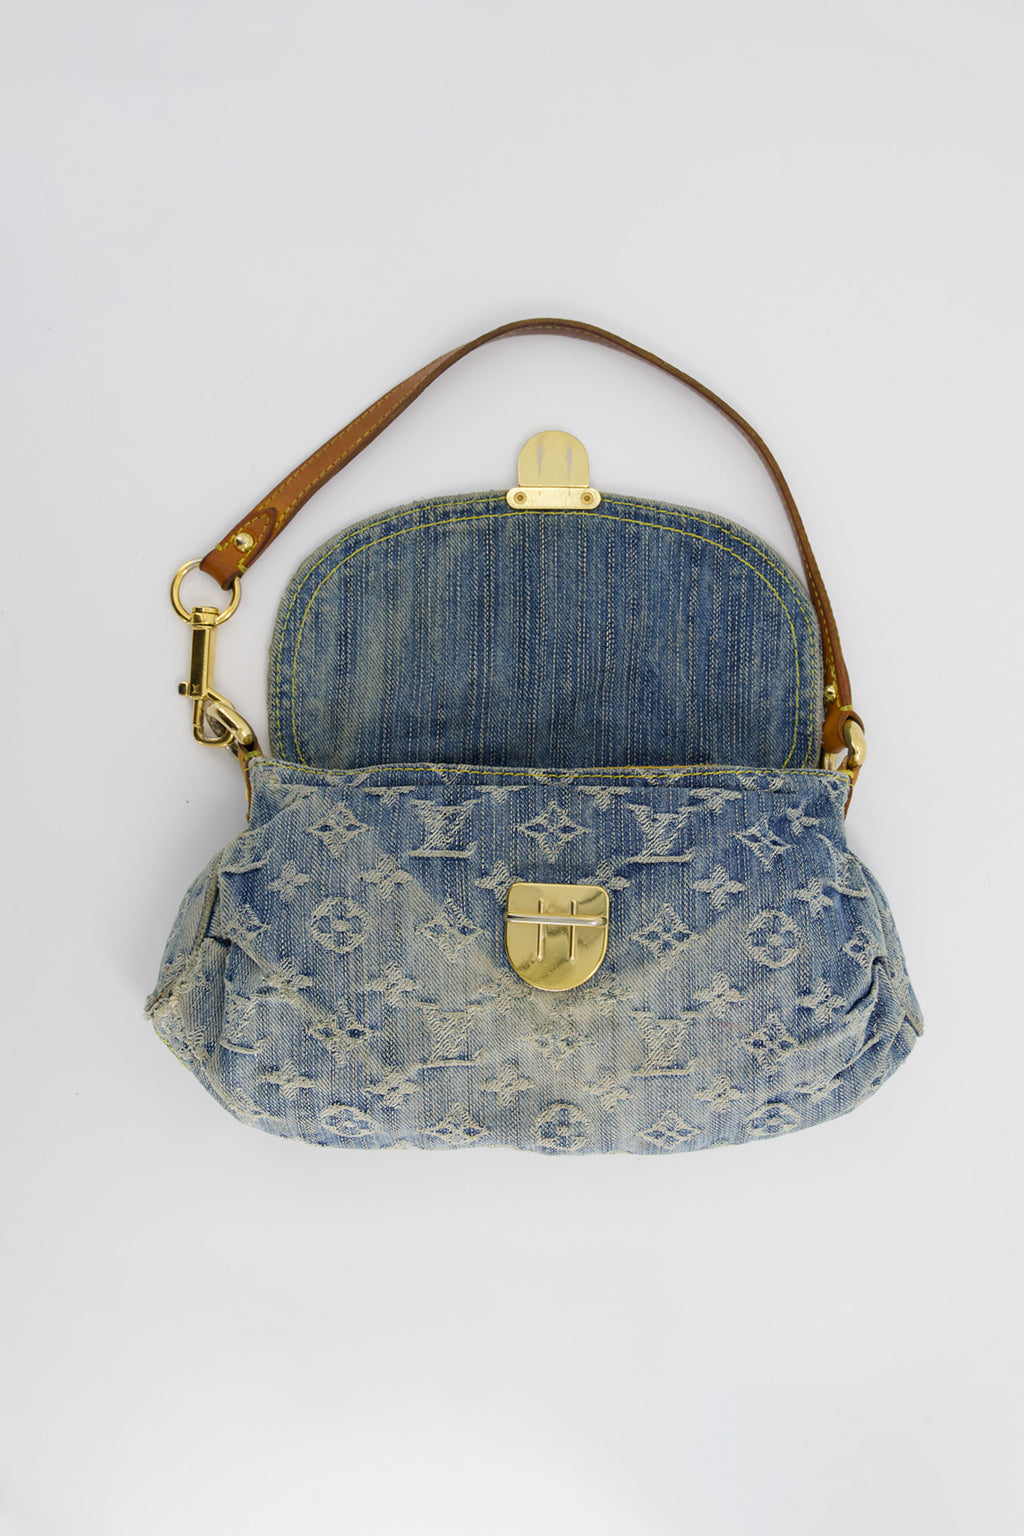 Louis Vuitton Pleaty Handbag